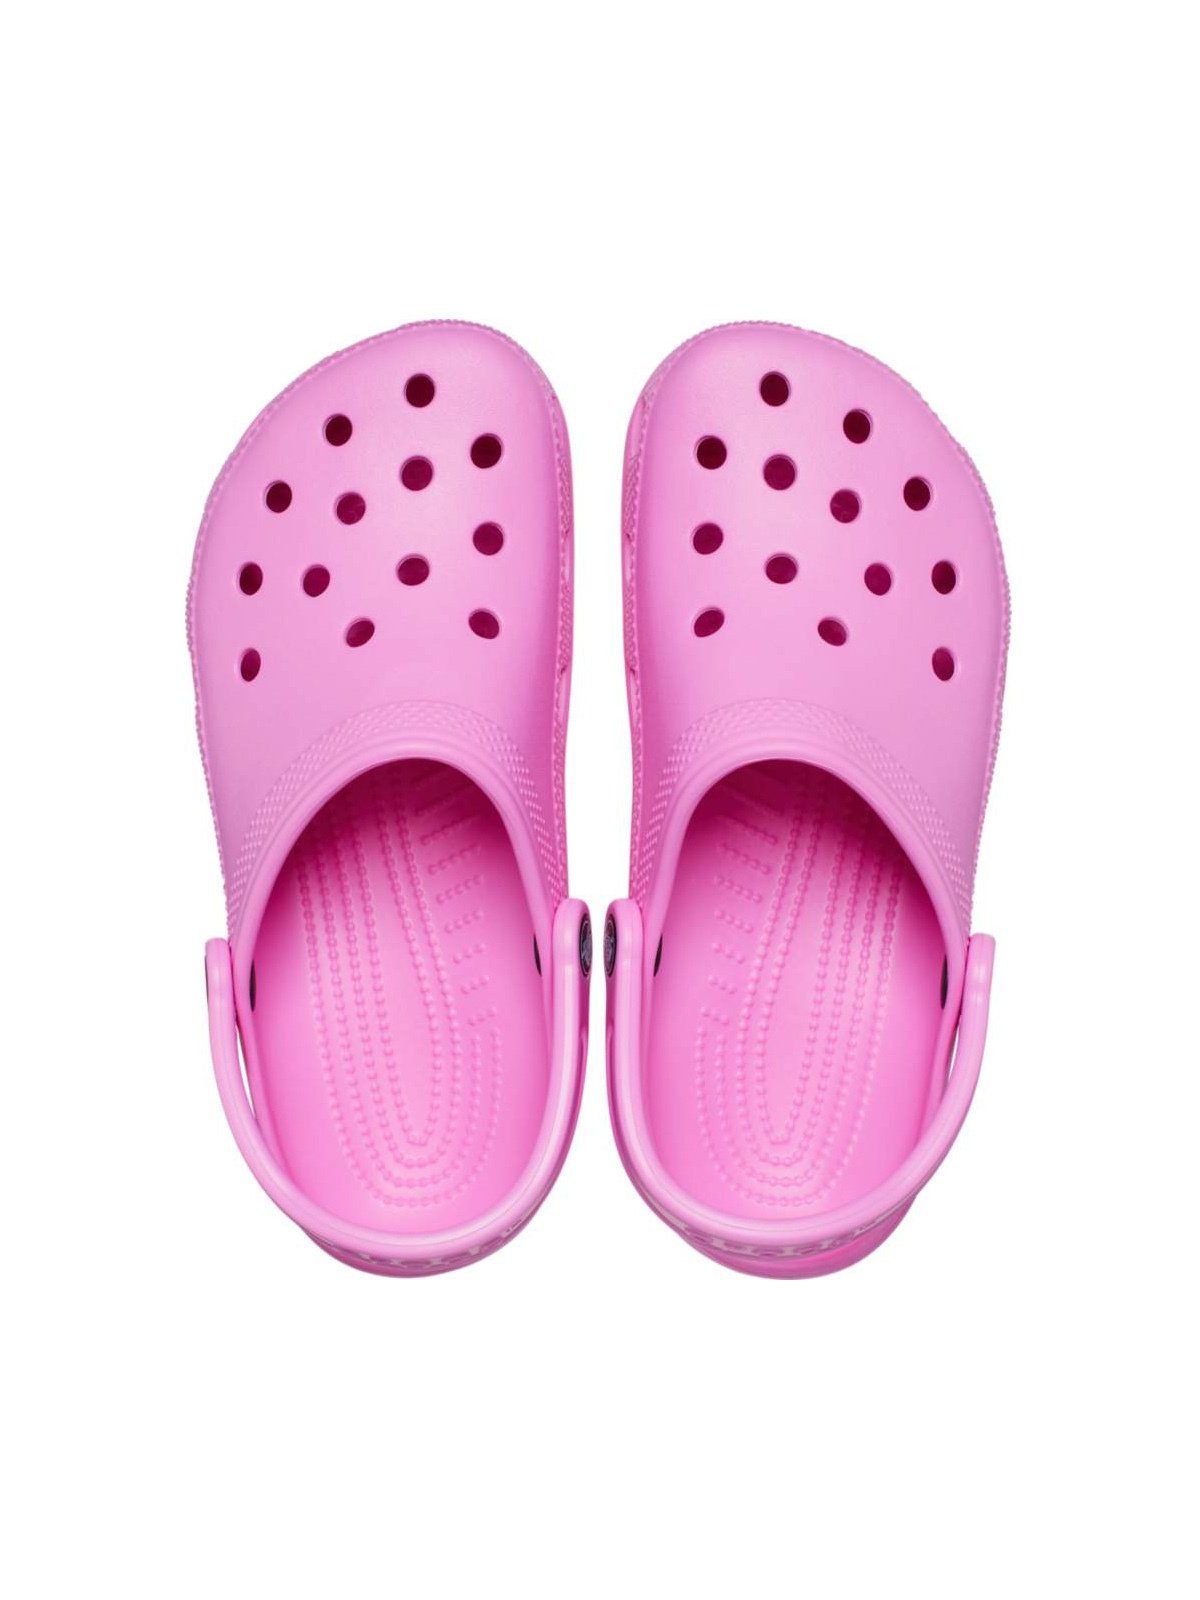 Classic taffy Crocs Clog pink Crocs Clog